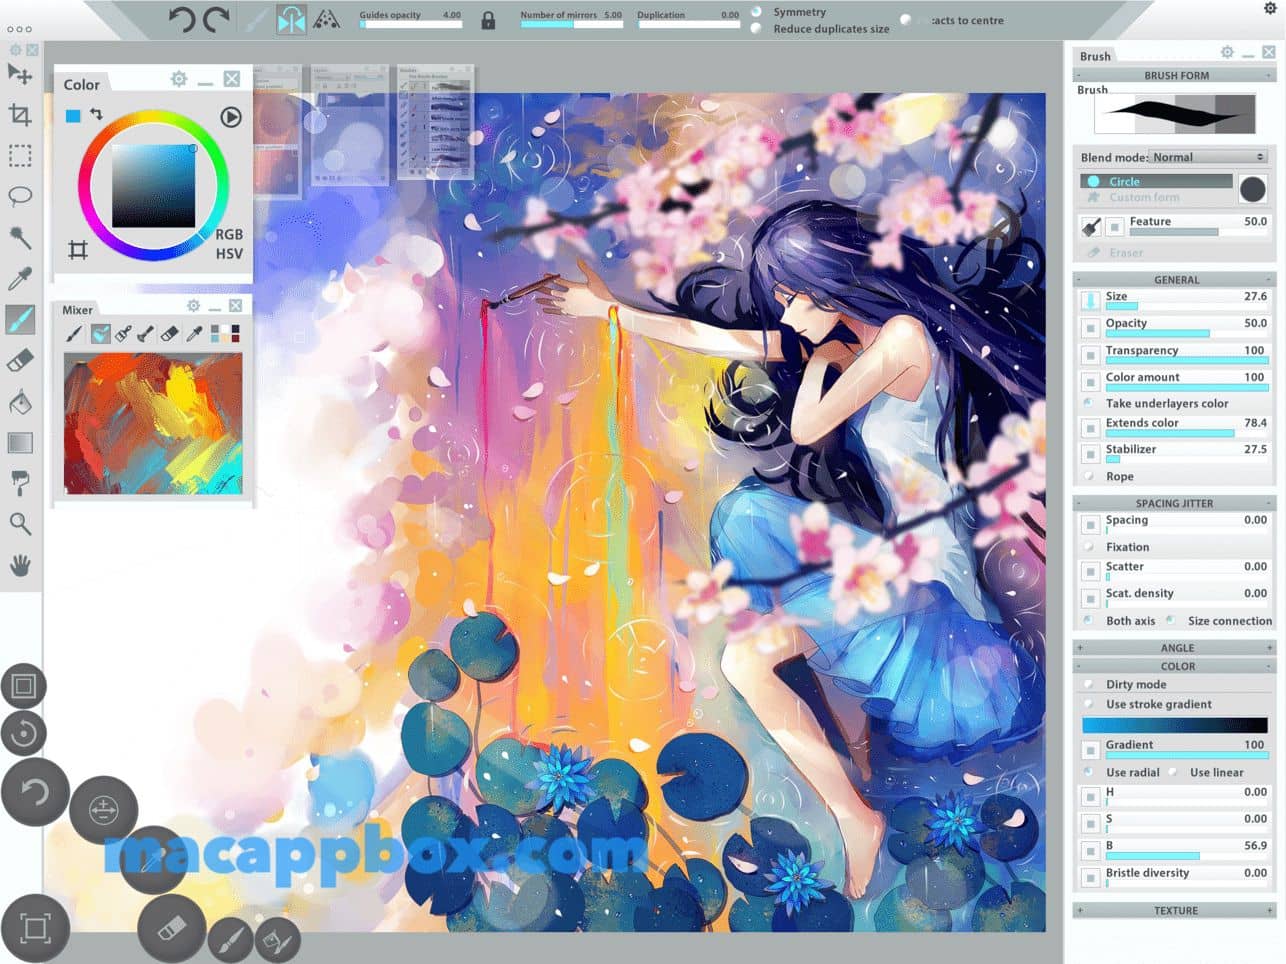 Paintstorm Studio for mac? 2.43 רҵֻ滭_վ